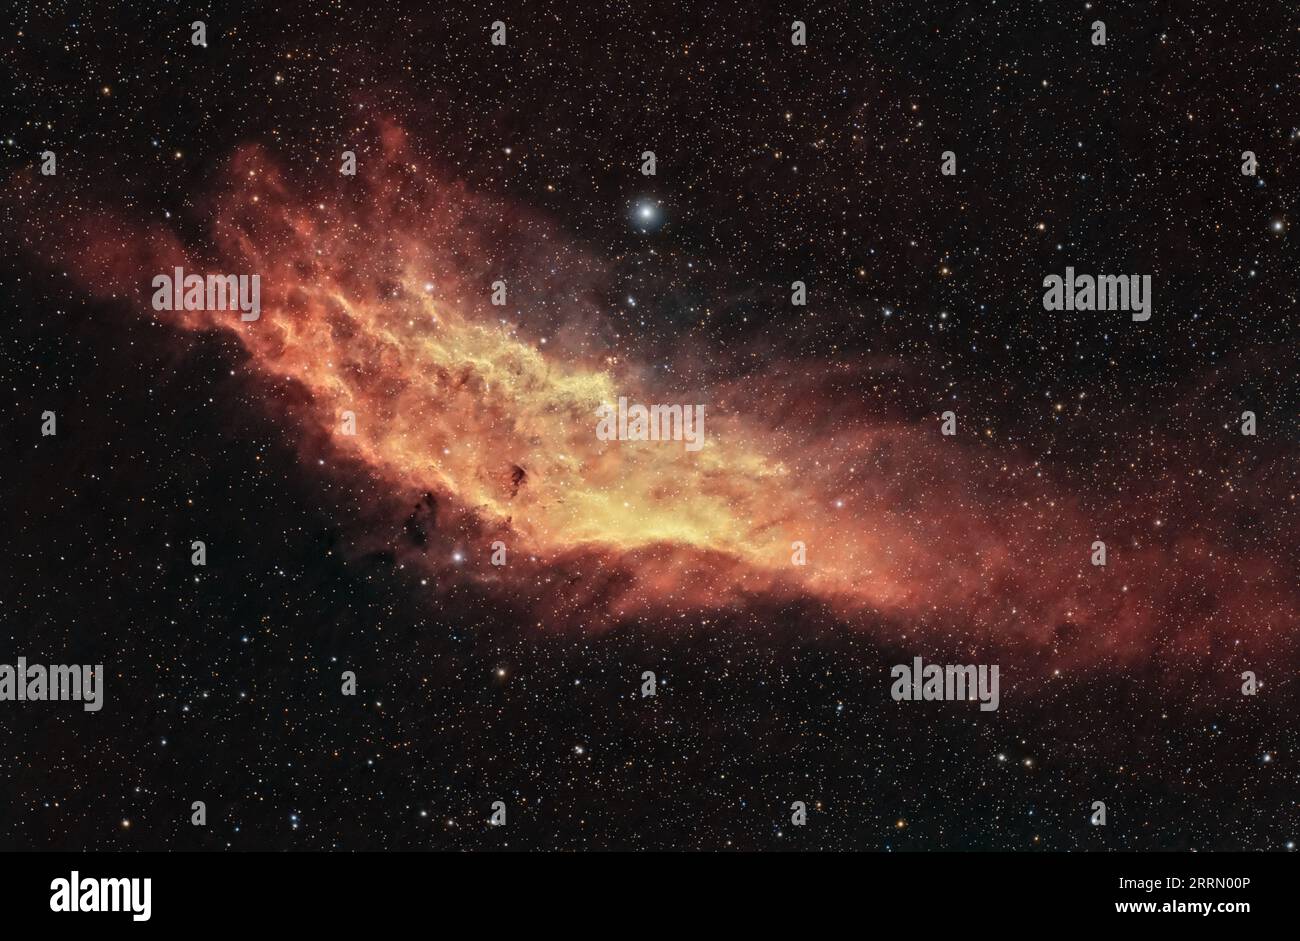 Cattura le vivaci sfumature della Nebulosa californiana con dettagli mozzafiato. Un capolavoro cosmico a milioni di anni luce di distanza. Foto Stock